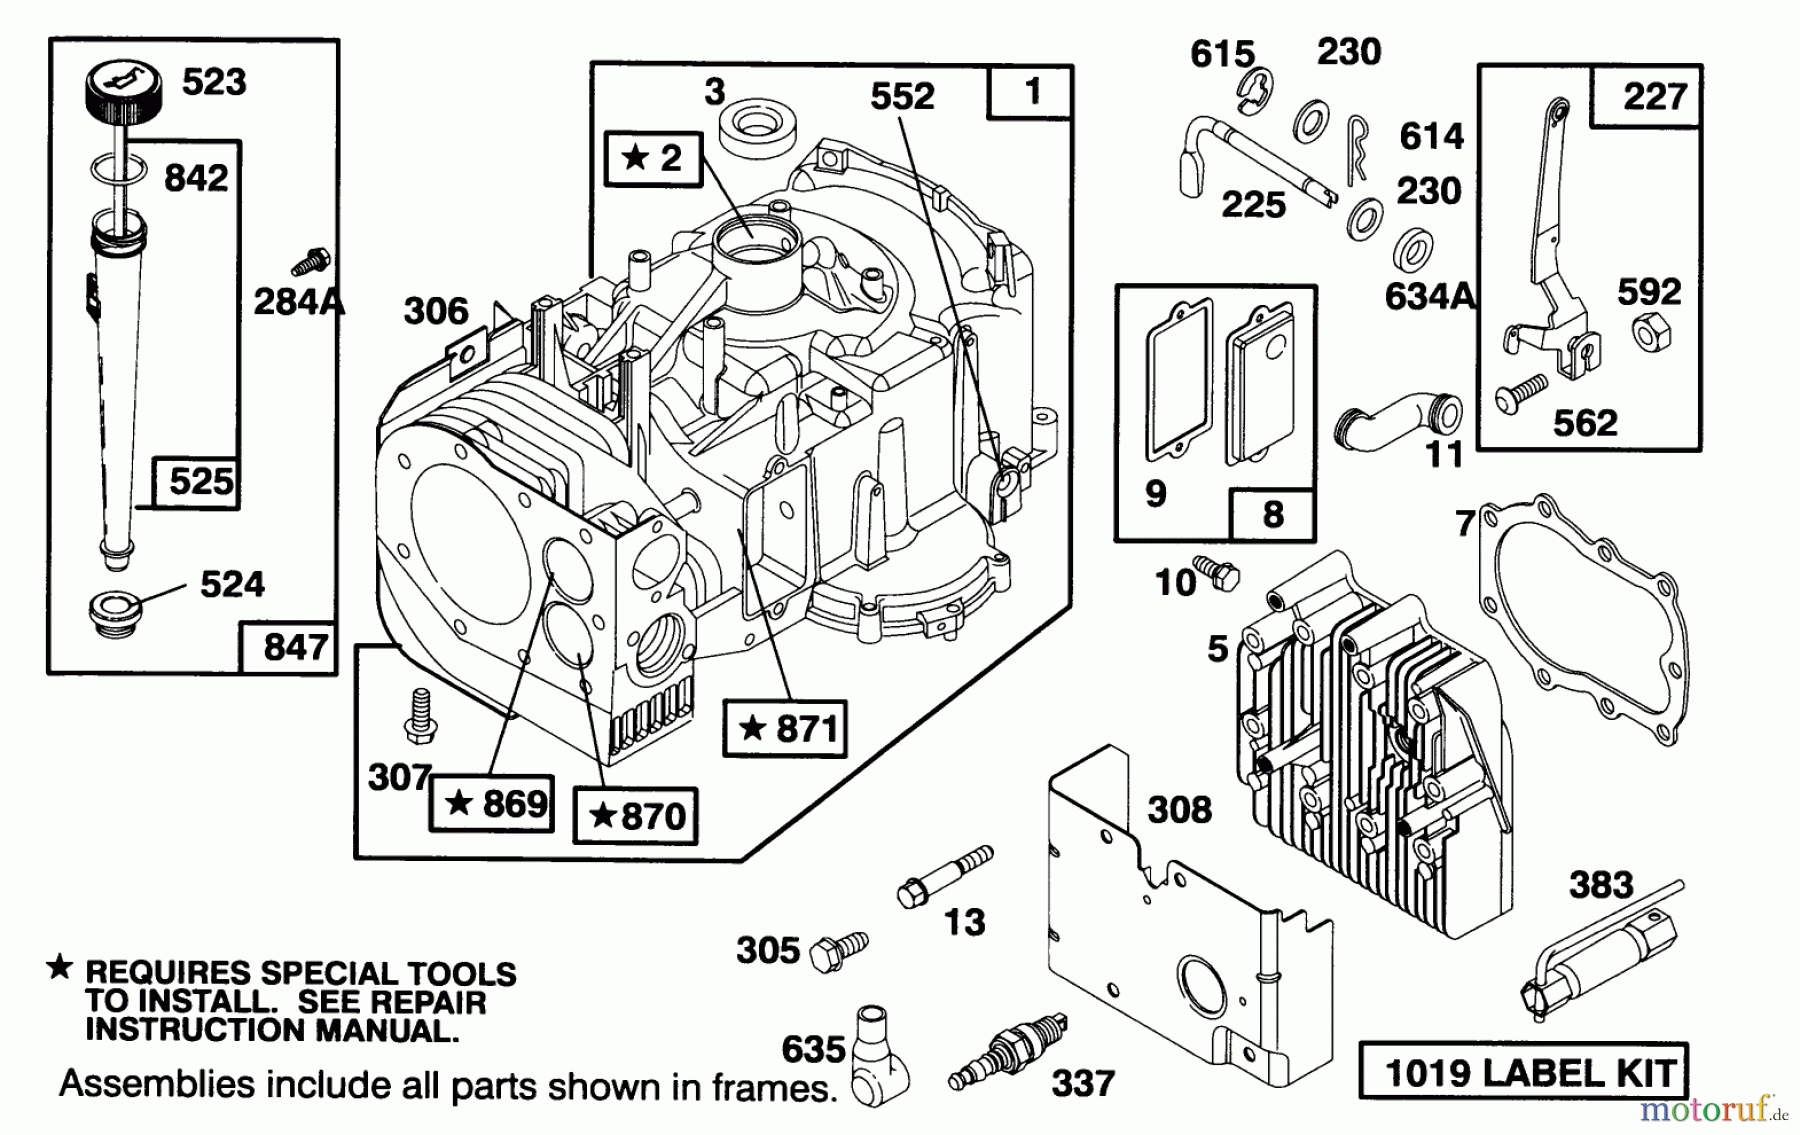  Toro Neu Mowers, Lawn & Garden Tractor Seite 1 71191 (13-38HXL) - Toro 13-38HXL Lawn Tractor, 1994 (4900001-4999999) ENGINE BRIGGS & STRATTON MODEL 28M707-0122-01 #1